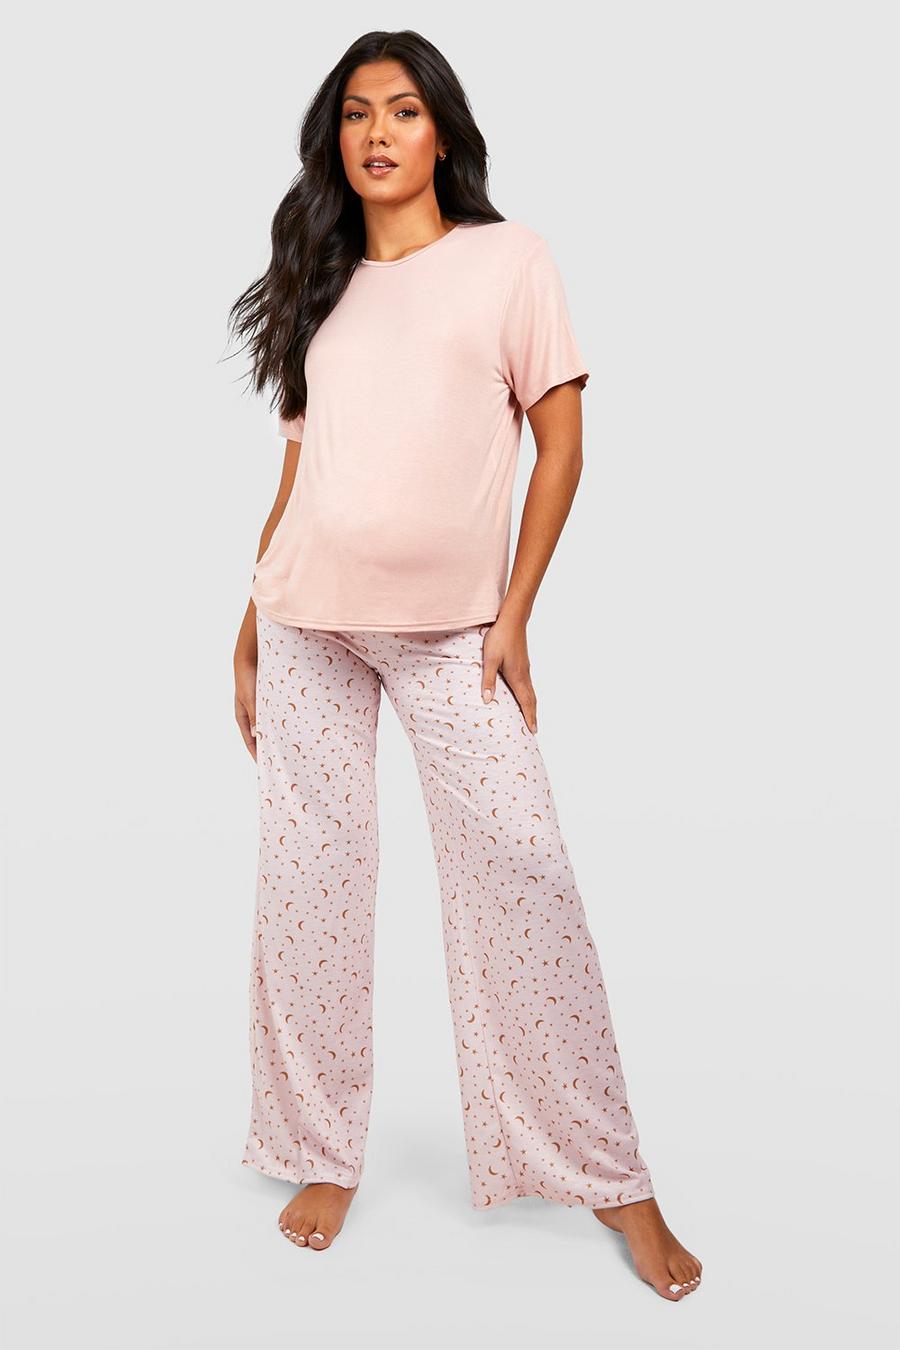 Blush Maternity Star Print Pajama Set